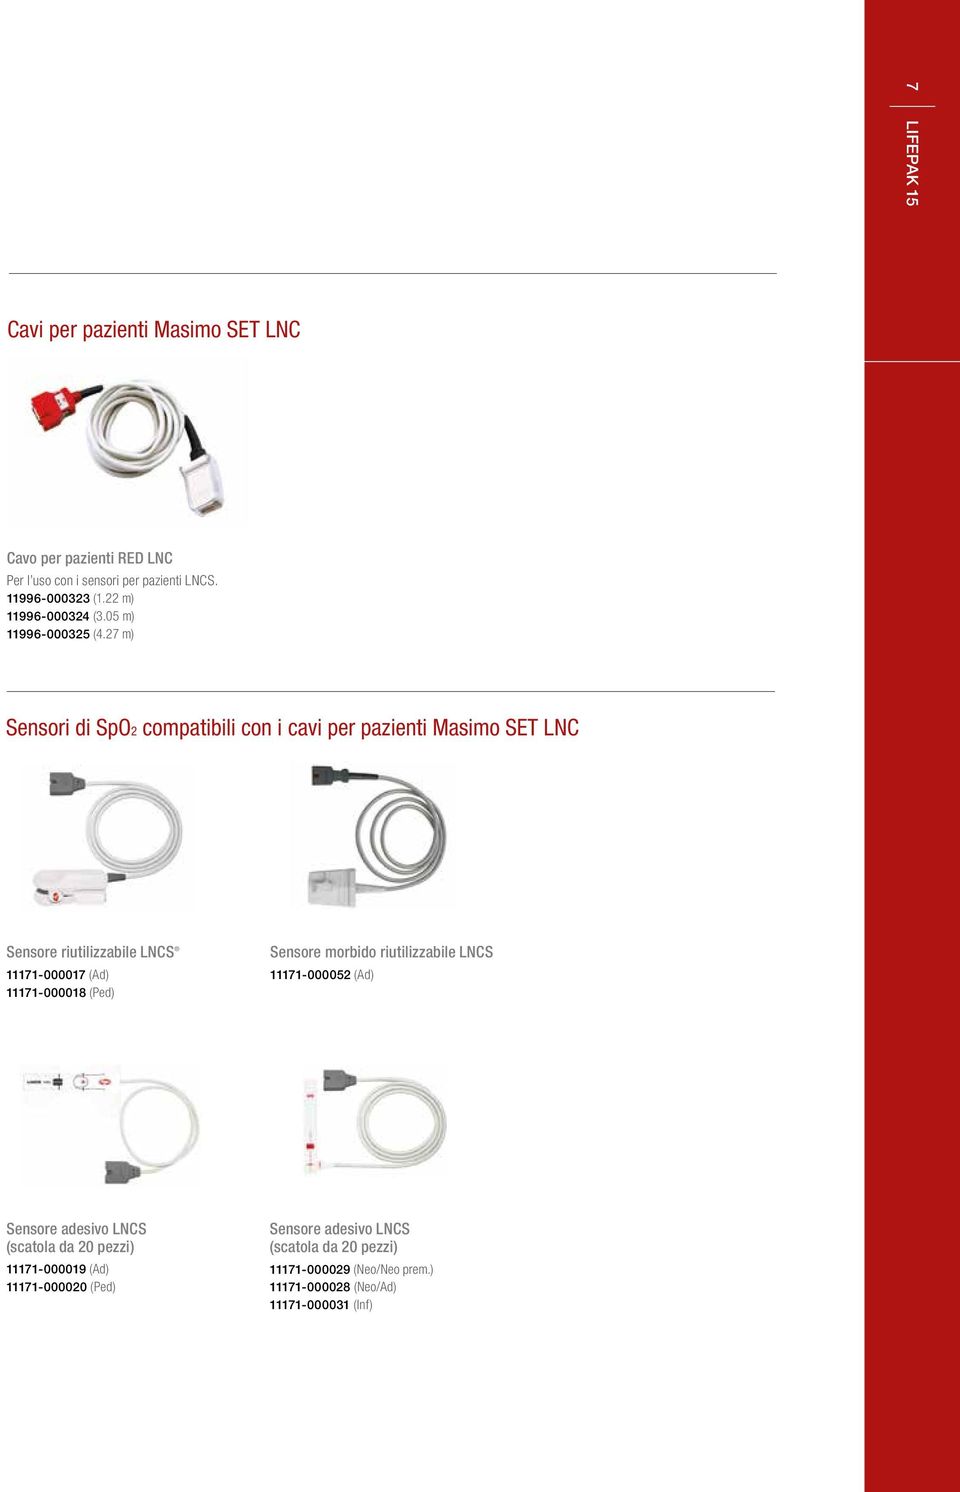 27 m) Sensori di SpO2 compatibili con i cavi per pazienti Masimo SET LNC Sensore riutilizzabile LNCS 11171-000017 (Ad) 11171-000018 (Ped)